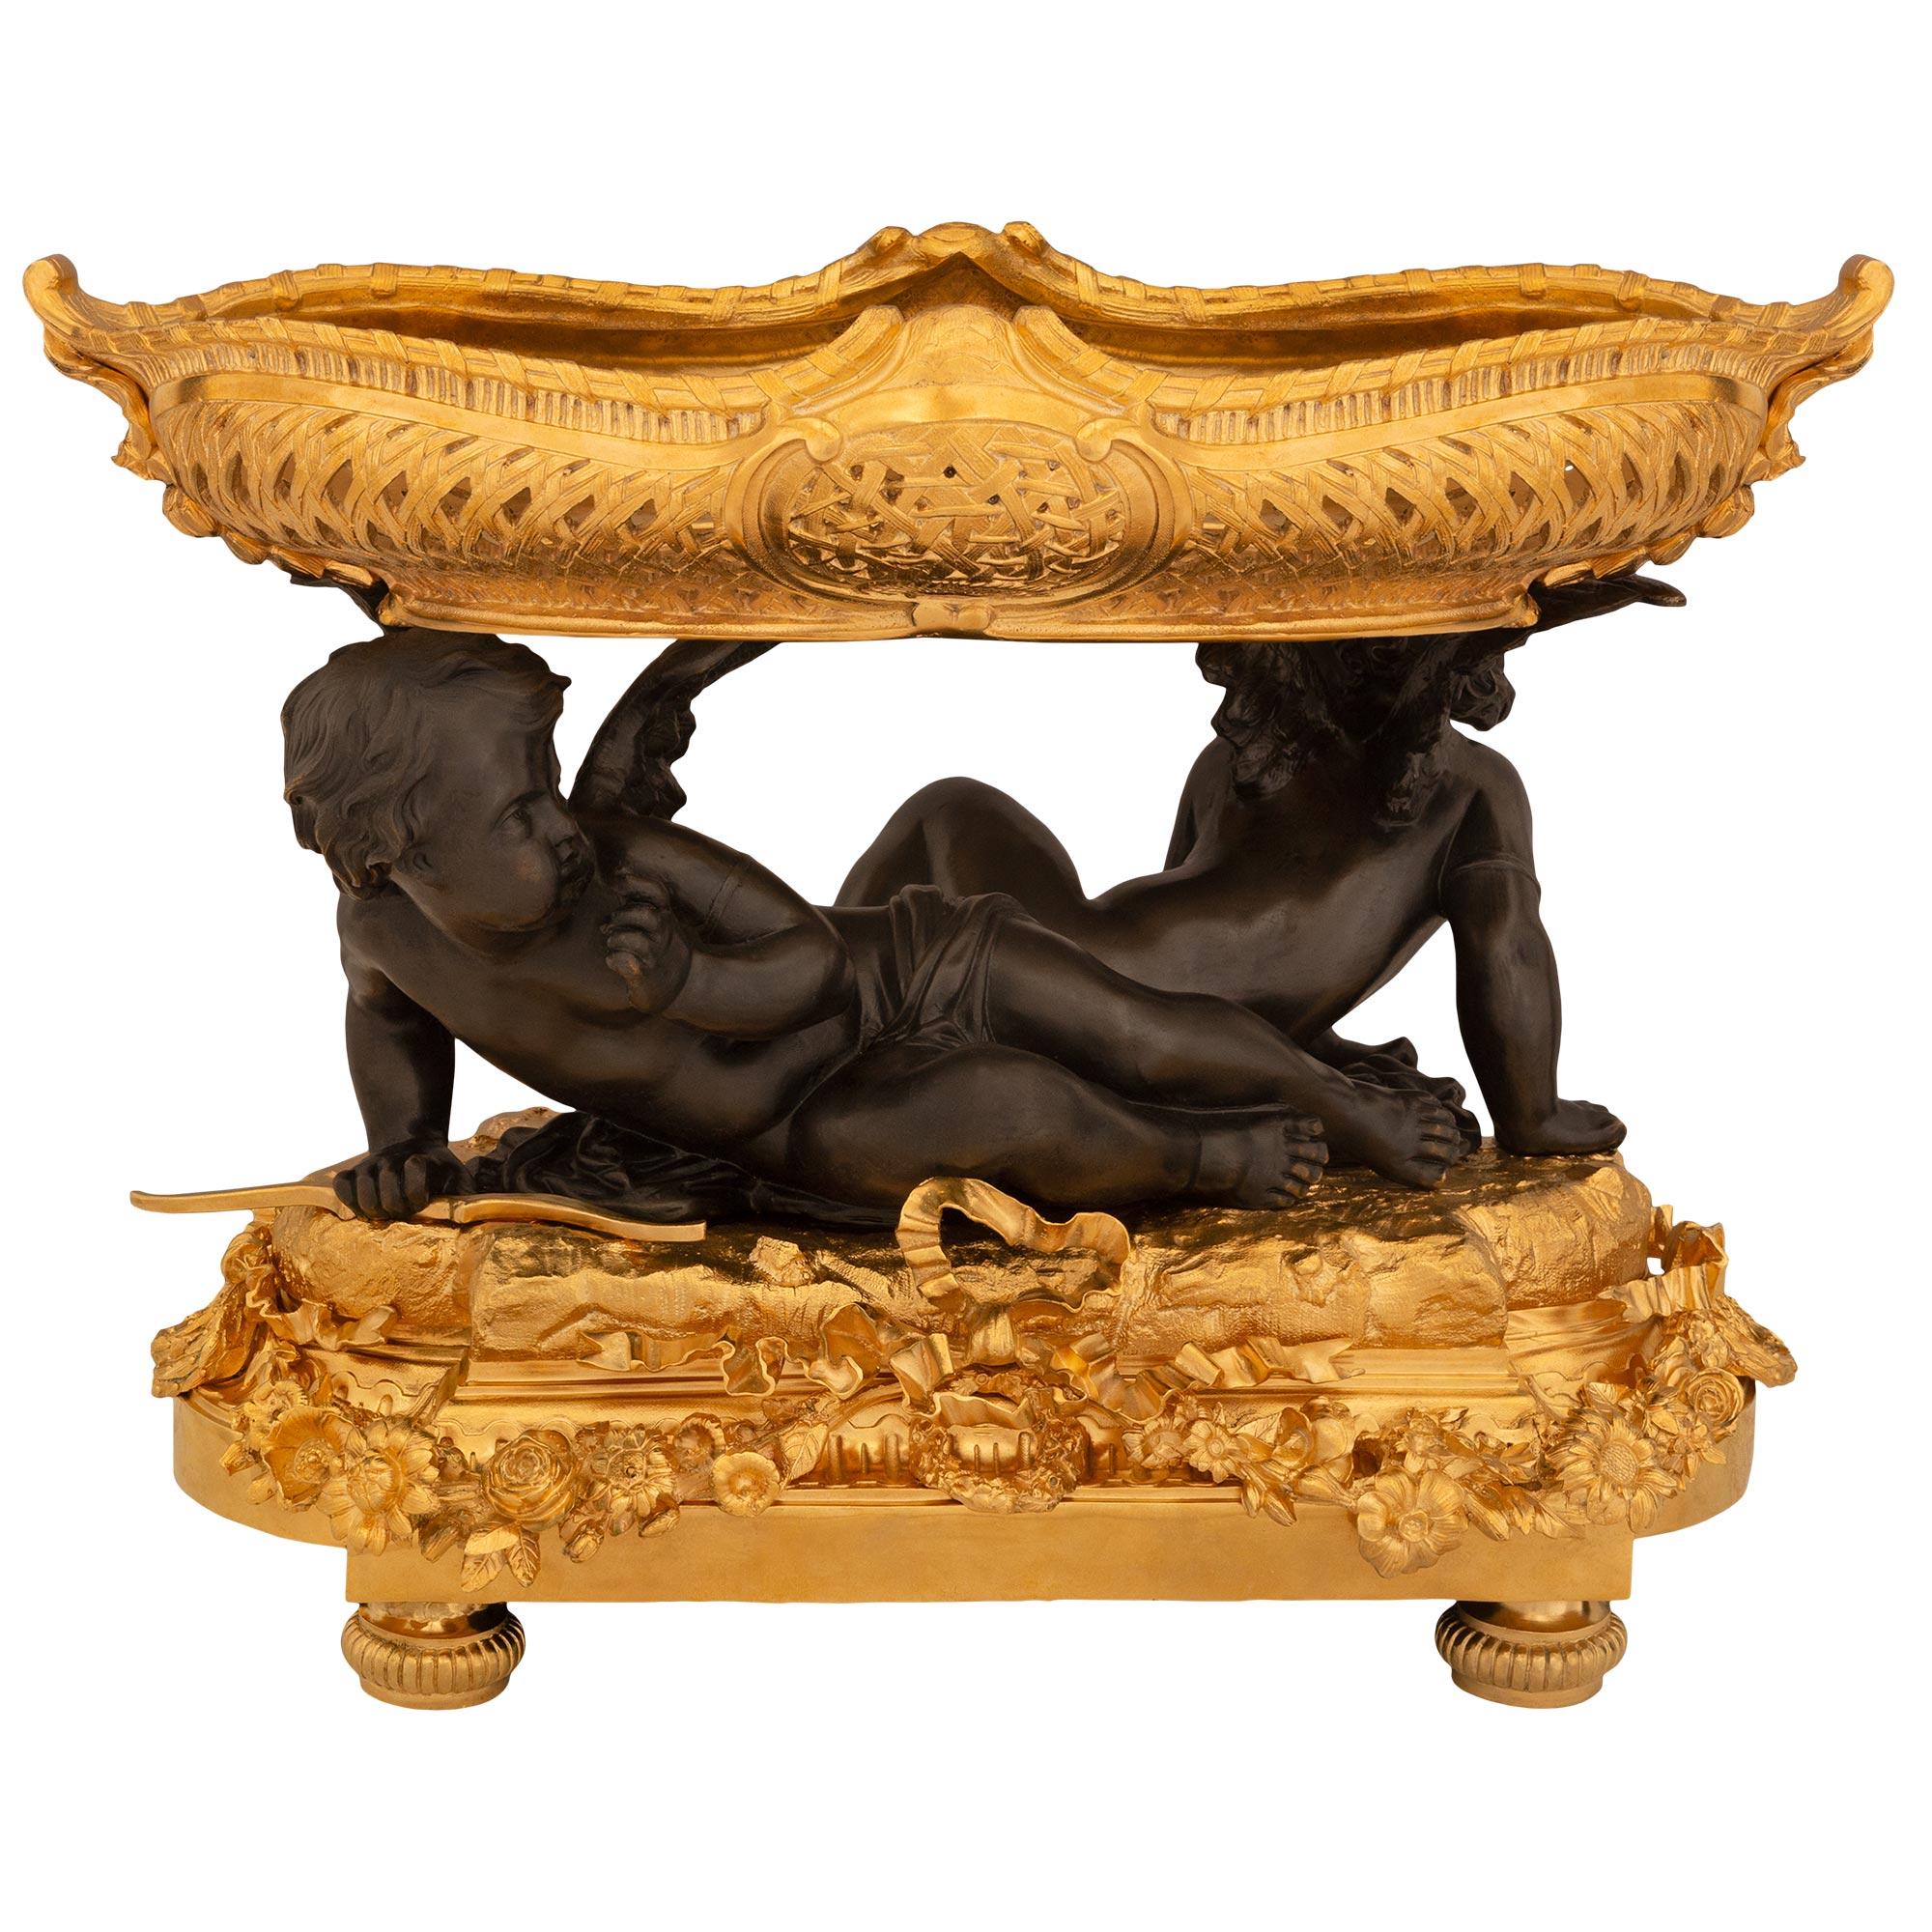 Eine sensationelle und groß angelegte Französisch Mitte des 19. Jahrhunderts Louis XVI st. Ormolu und patiniert Bronze Mittelstück. Das Mittelstück wird von topieförmigen Füßen unter einem reich verzierten Sockel getragen. Der Sockel hat eine